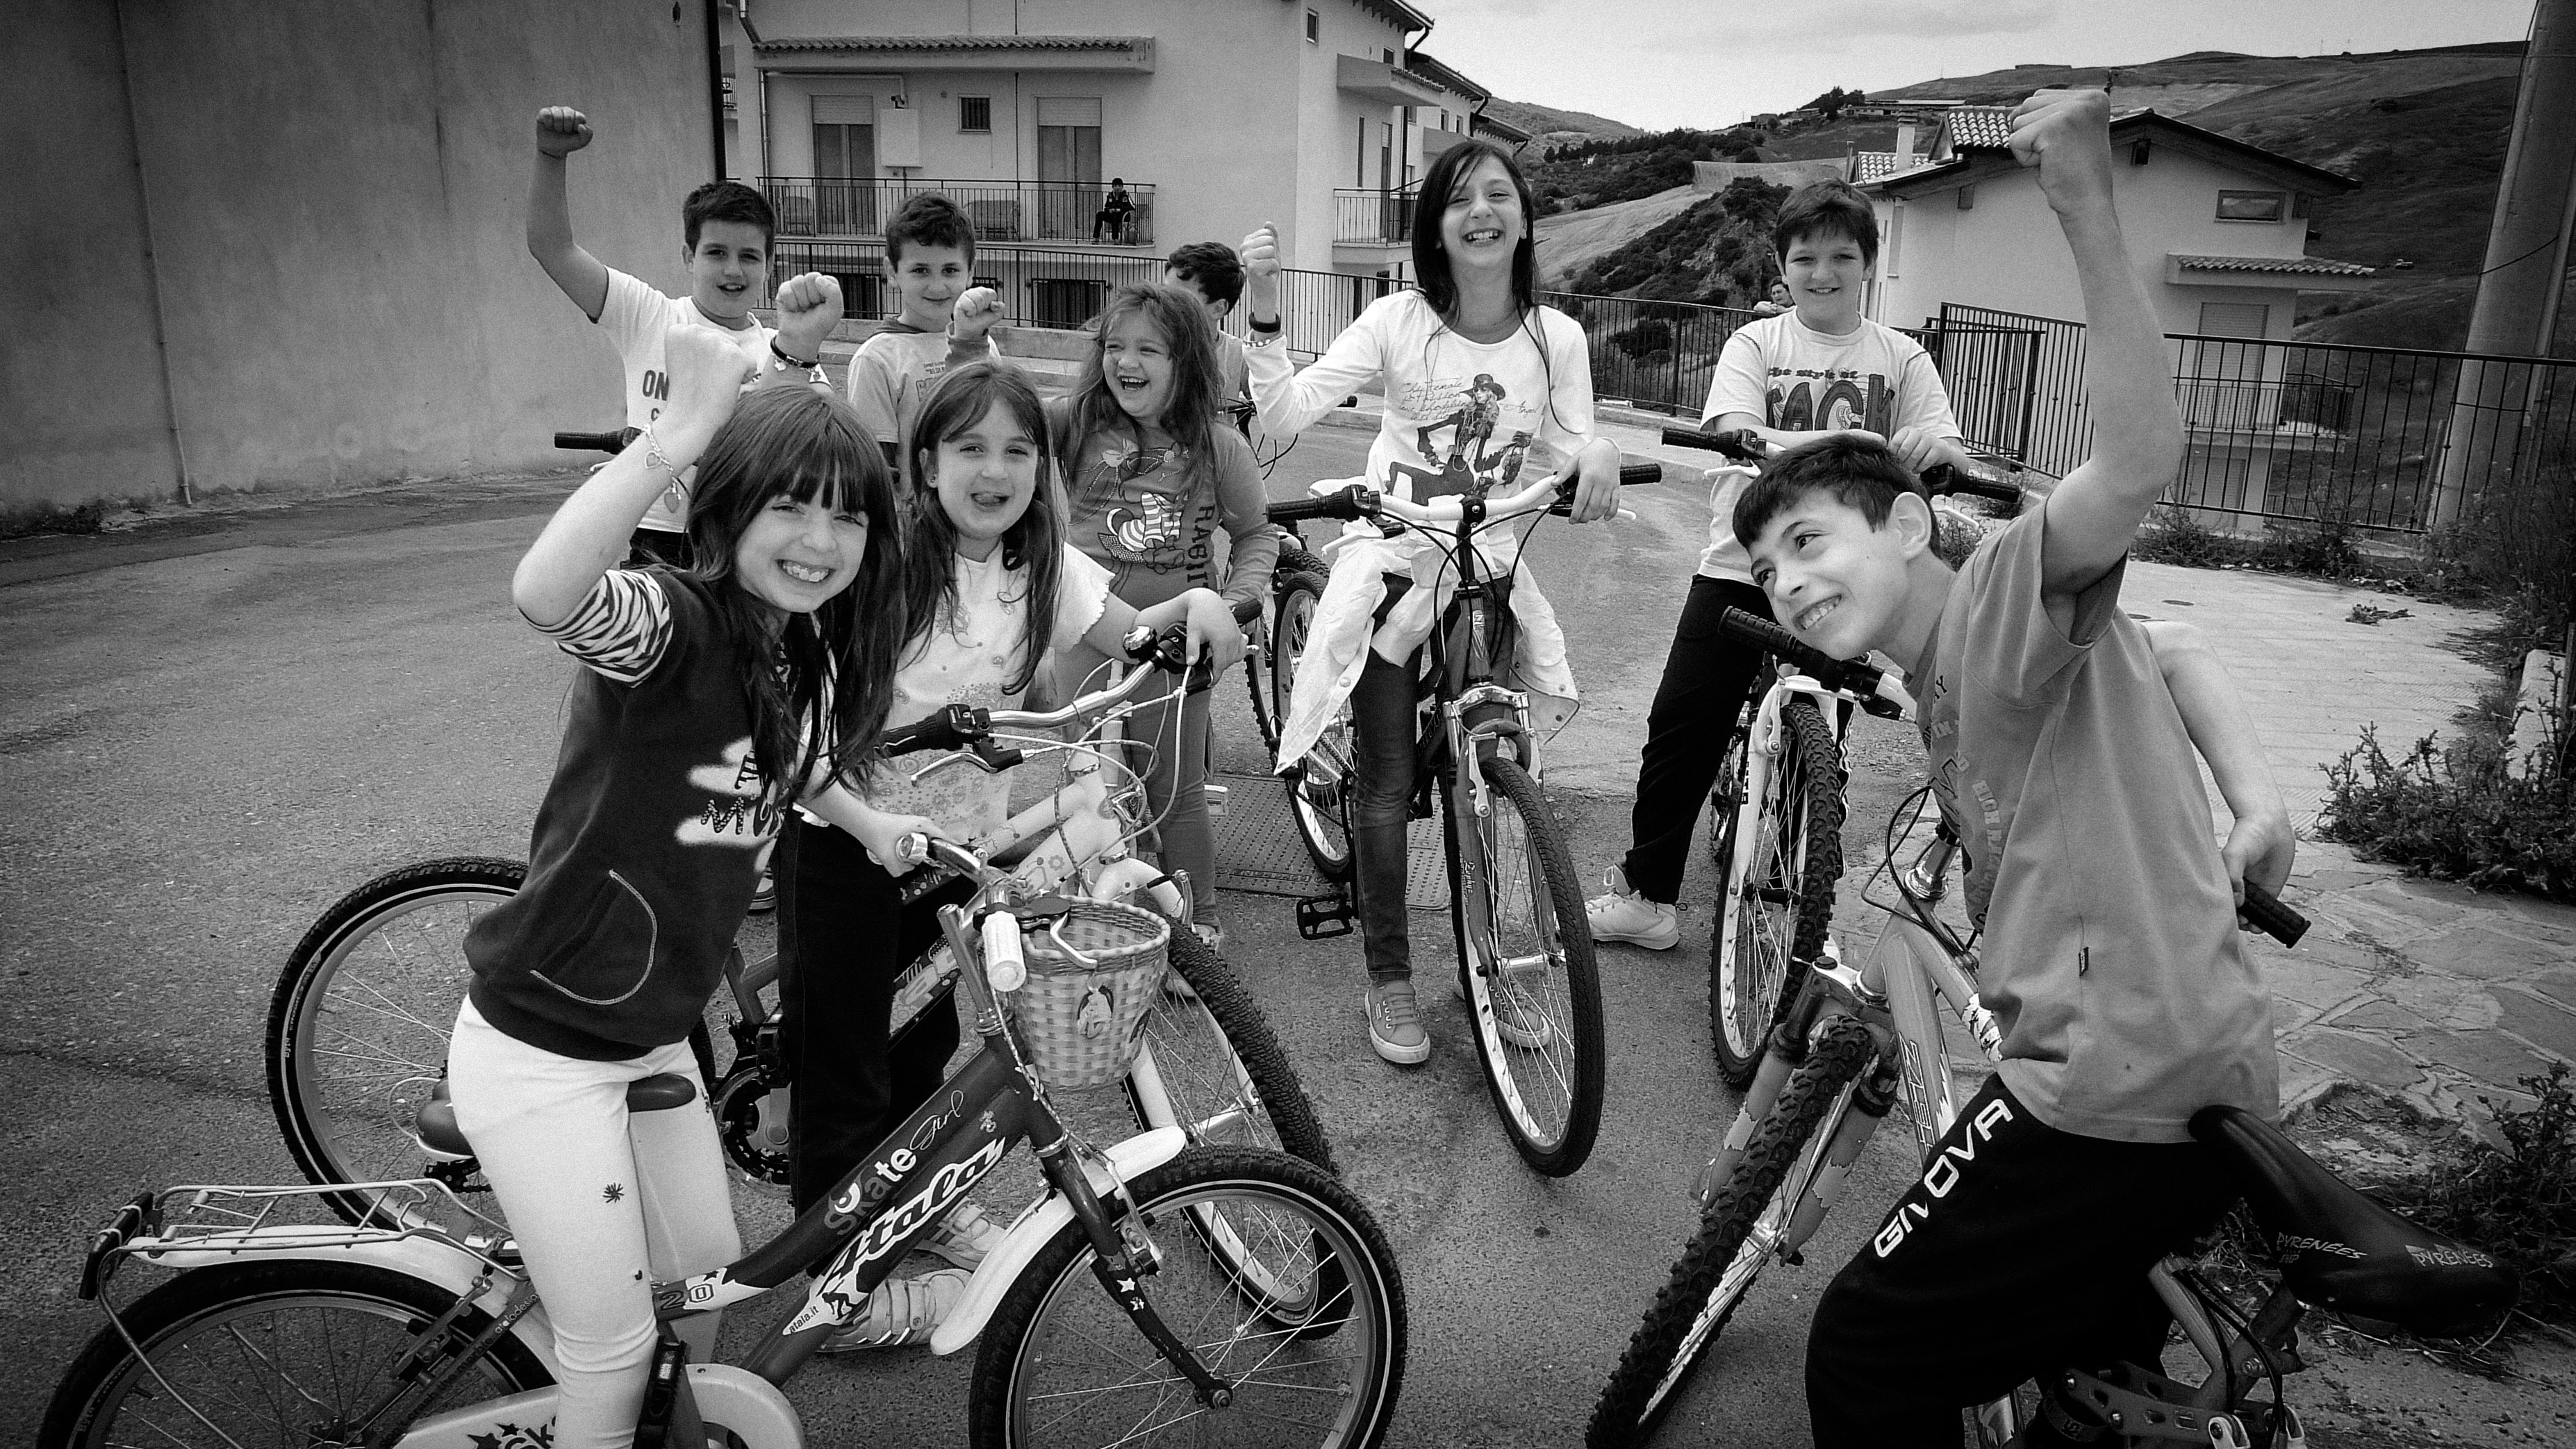 Kids biking in Basilicata